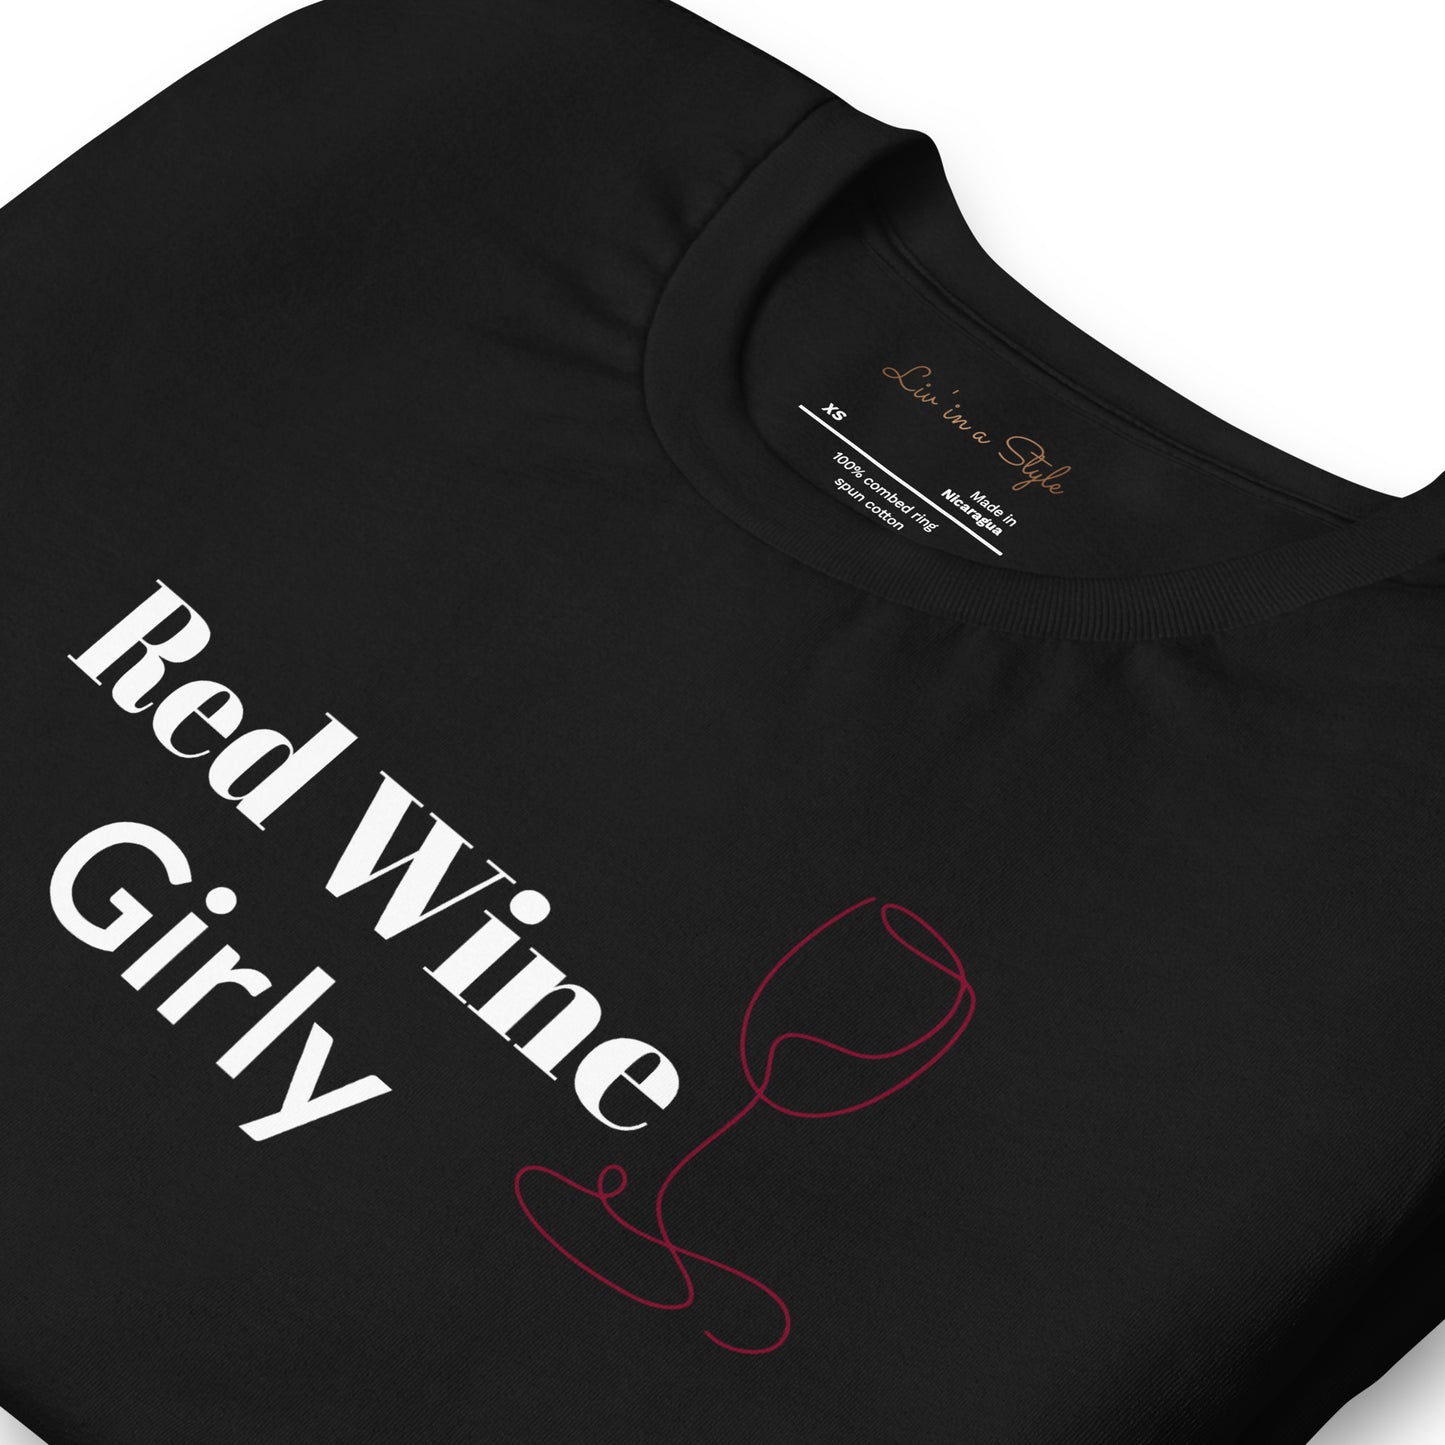 Red Wine Girly Unisex t-shirt